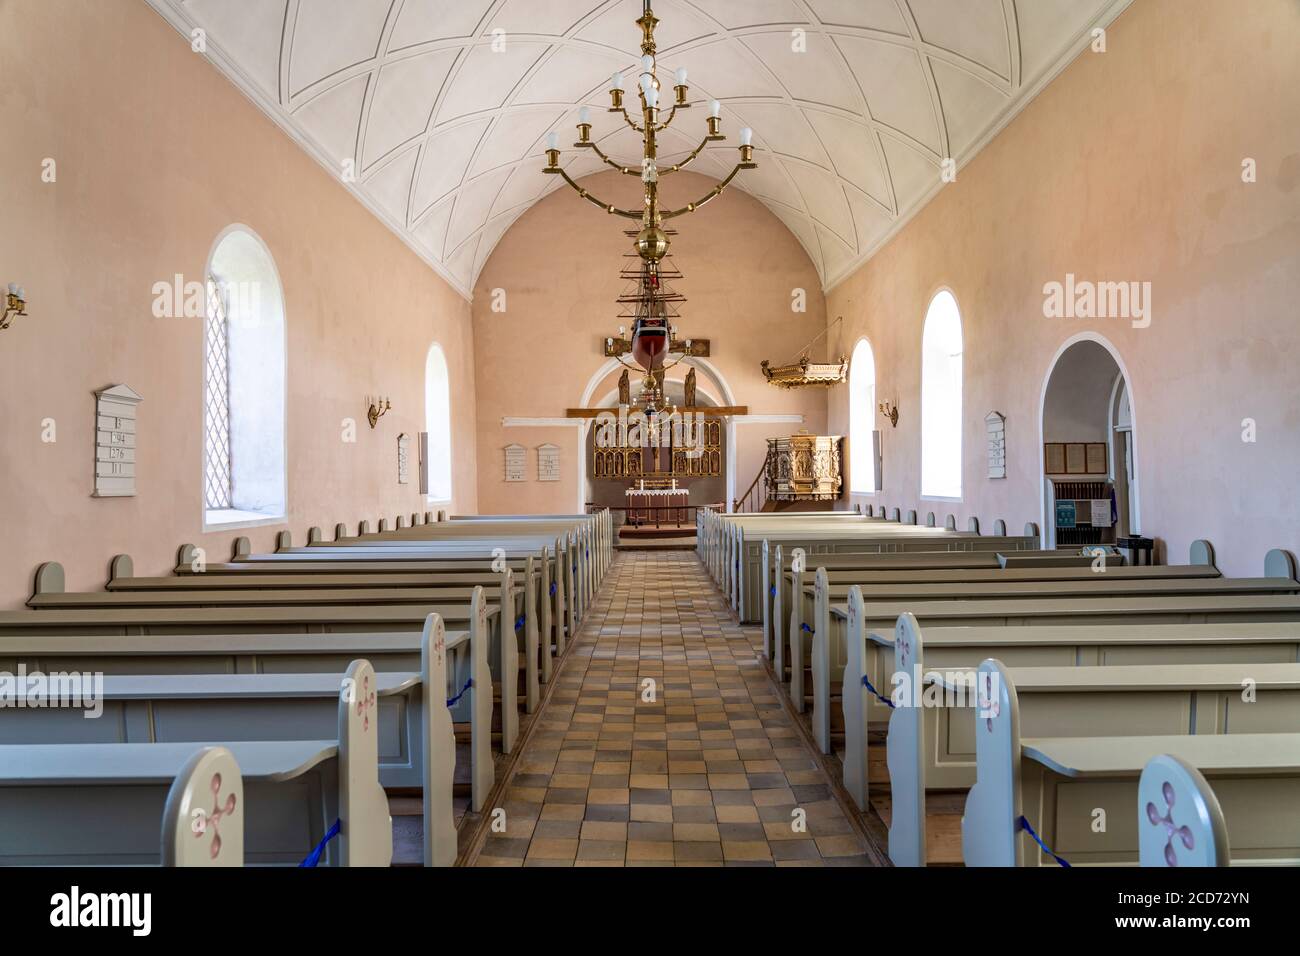 Innenraum der Kirche von Lindelse, Insel Langeland, Dänemark, Europa | Lindelse Church interior, Isola di Langeland, Danimarca, Europa Foto Stock